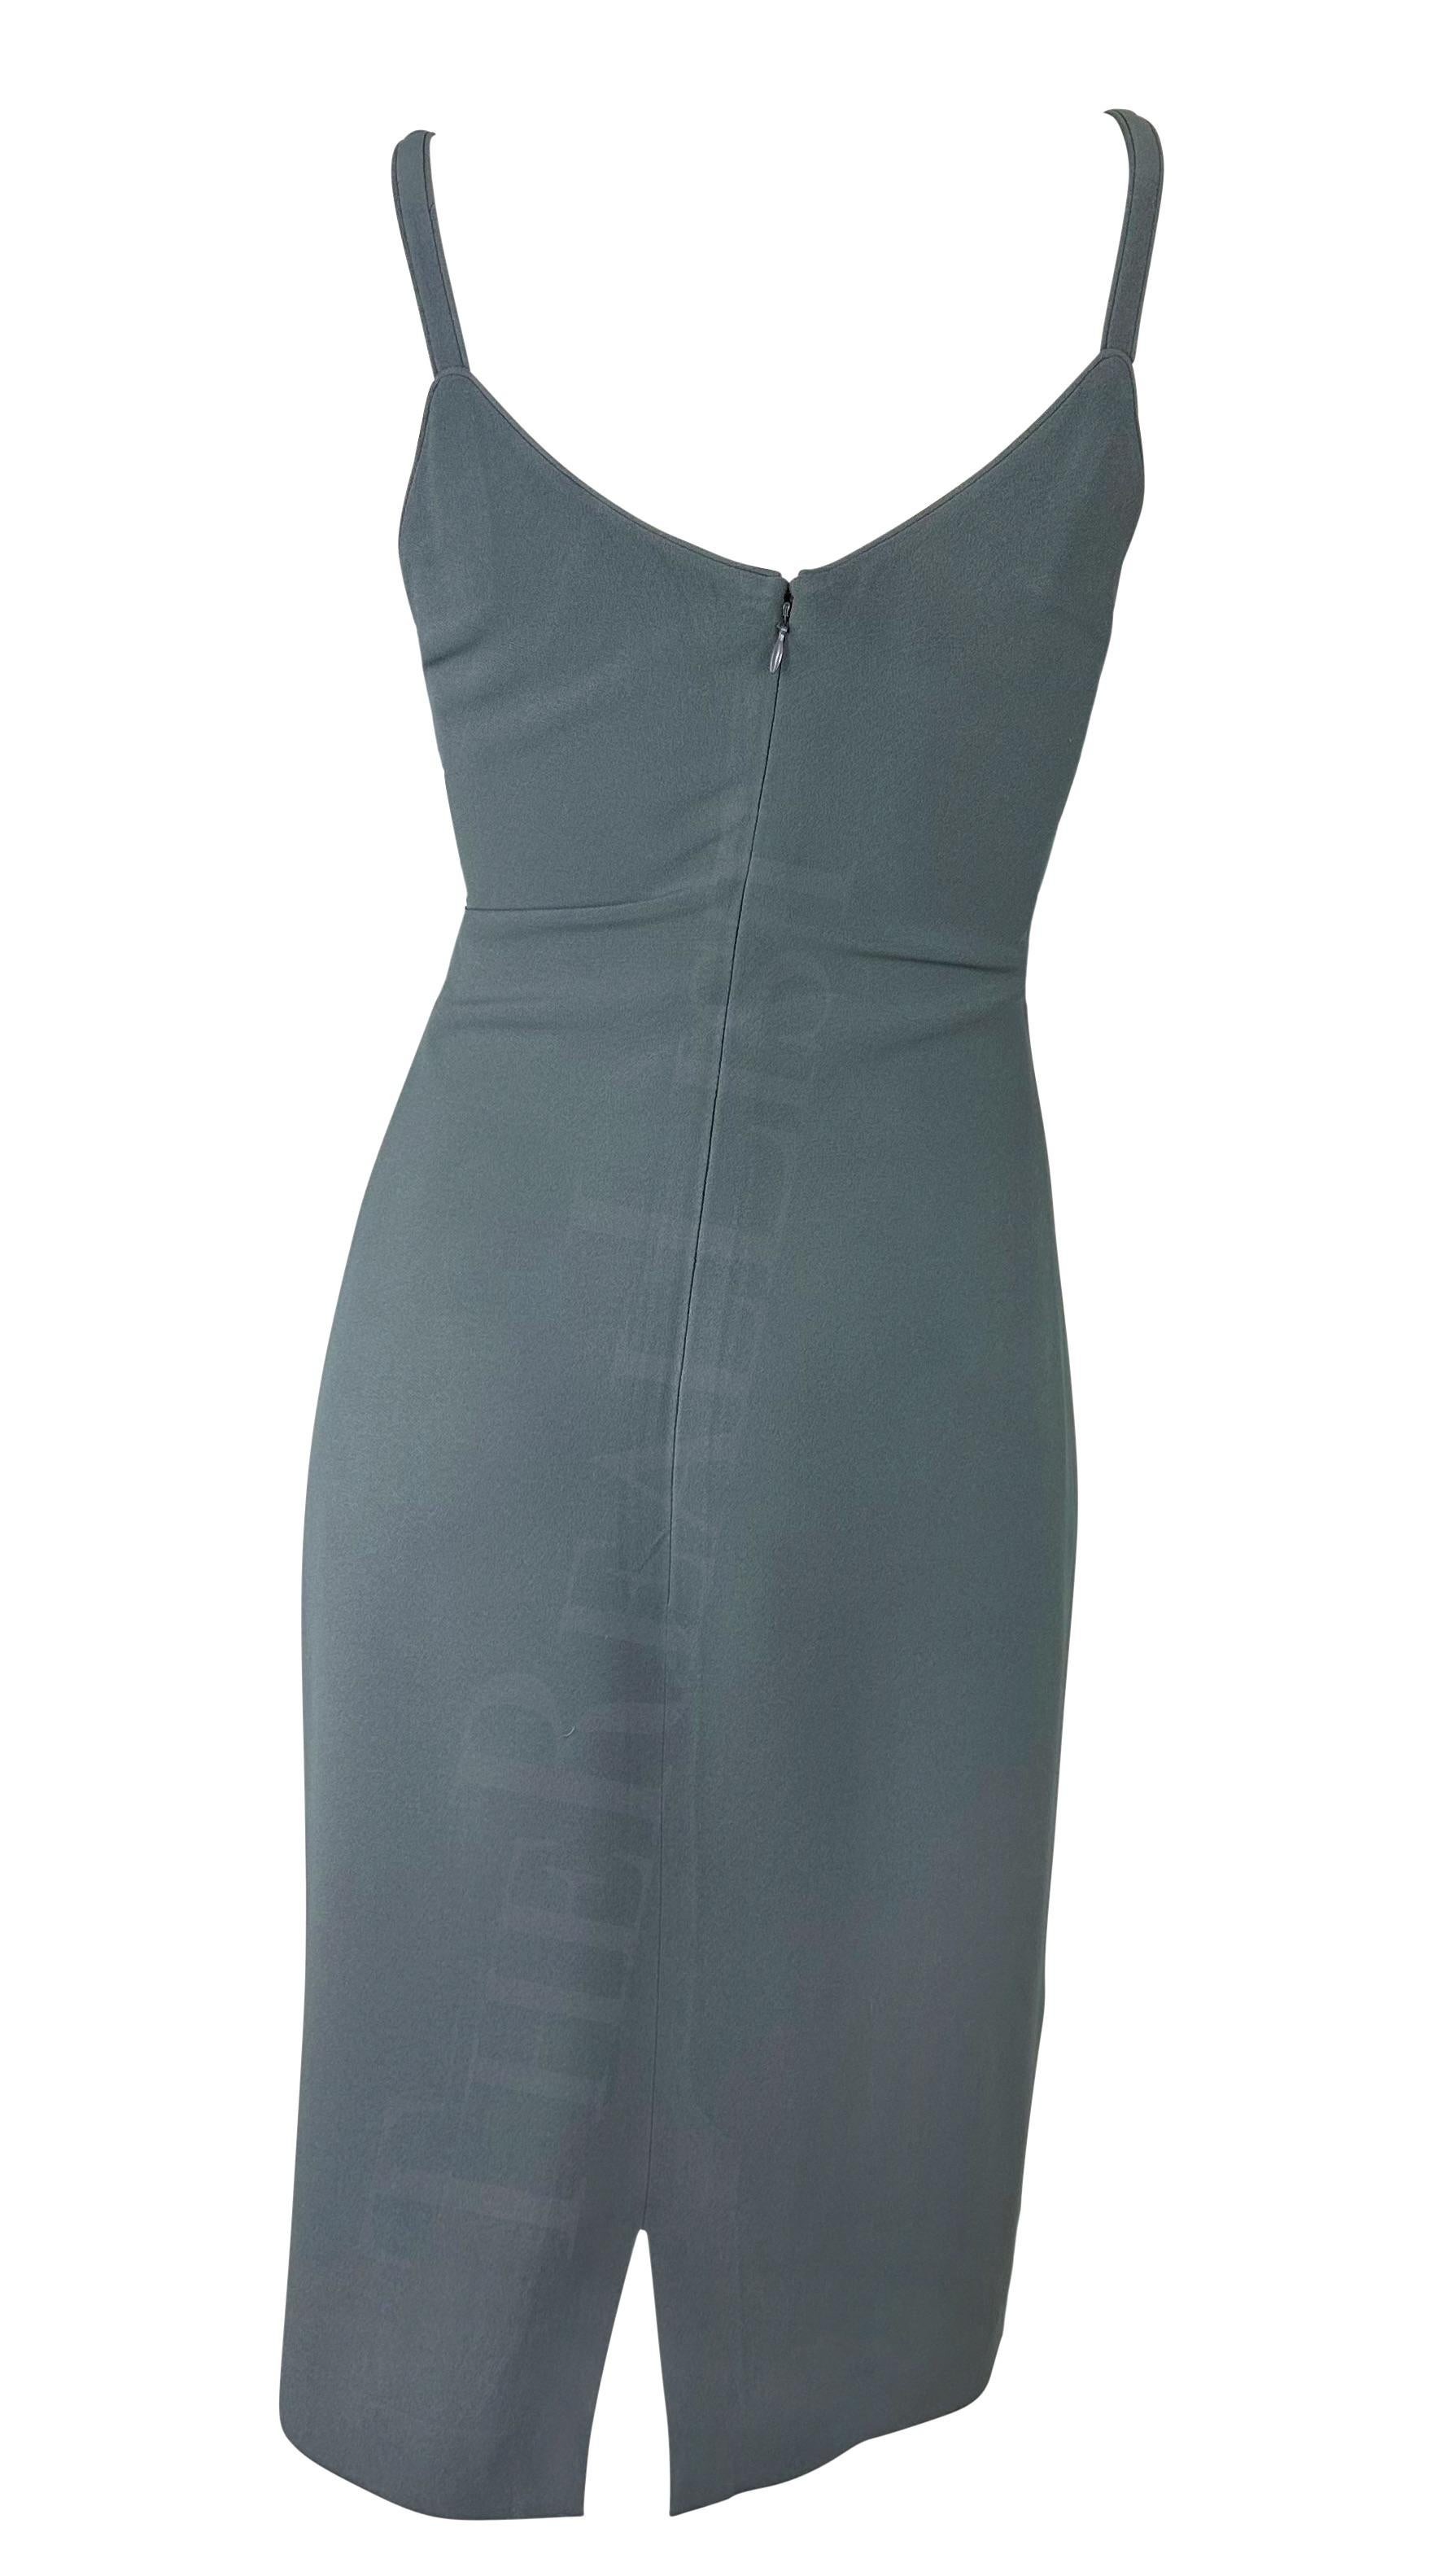 Women's 1990s Giorgio Armani Grey Minimalist Slip Dress